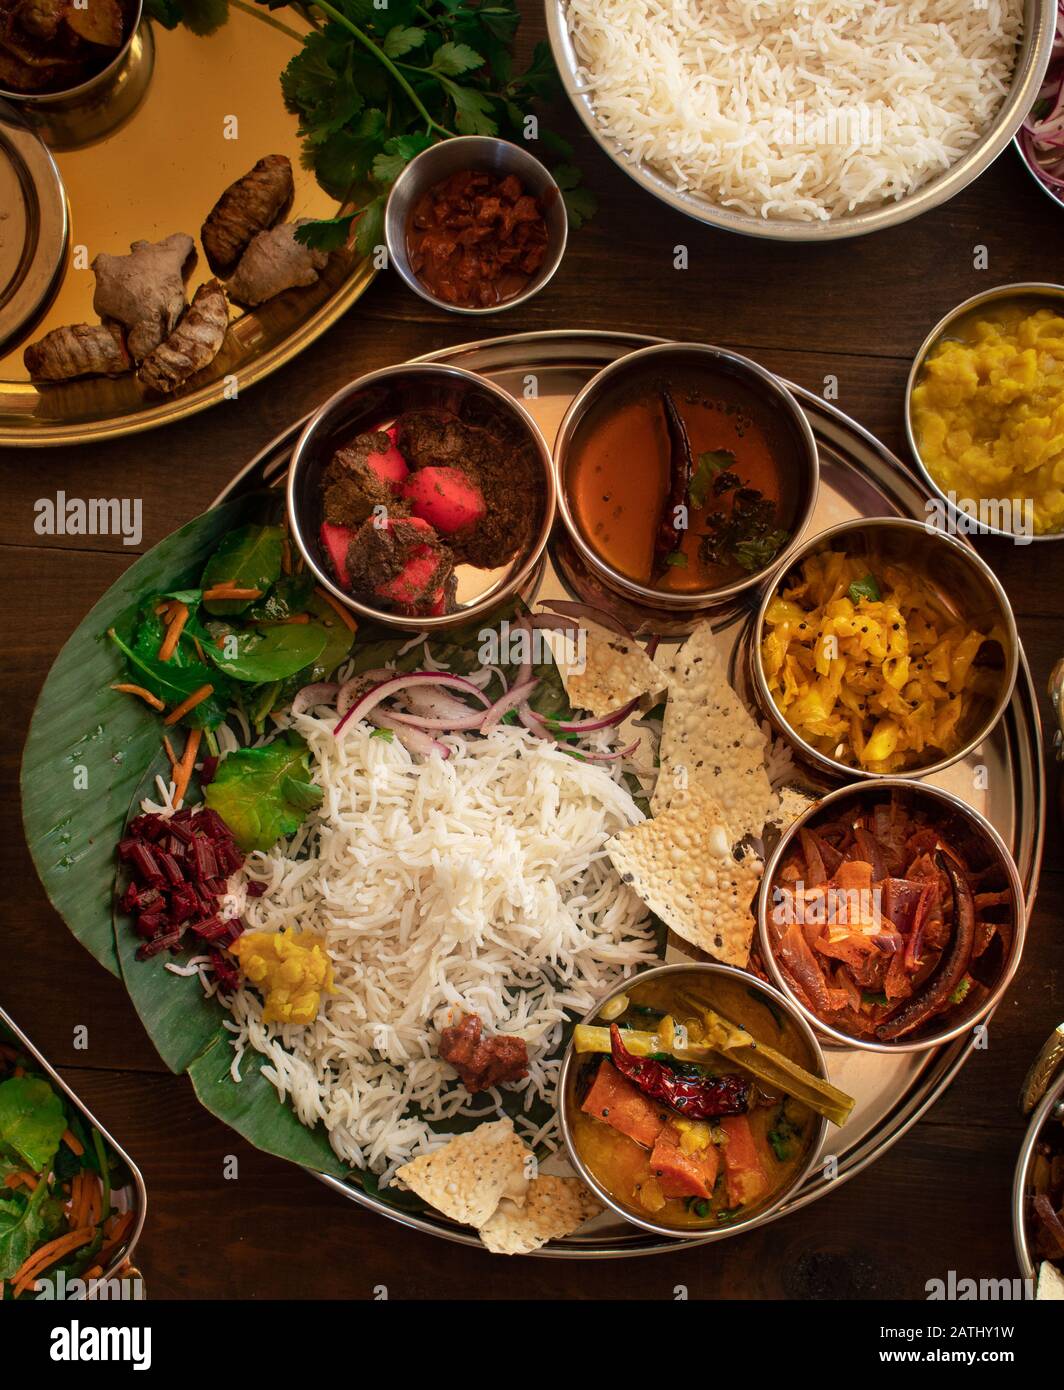 Cuisine végétarienne sud-indienne servie dans le style thali sur une table en bois Banque D'Images